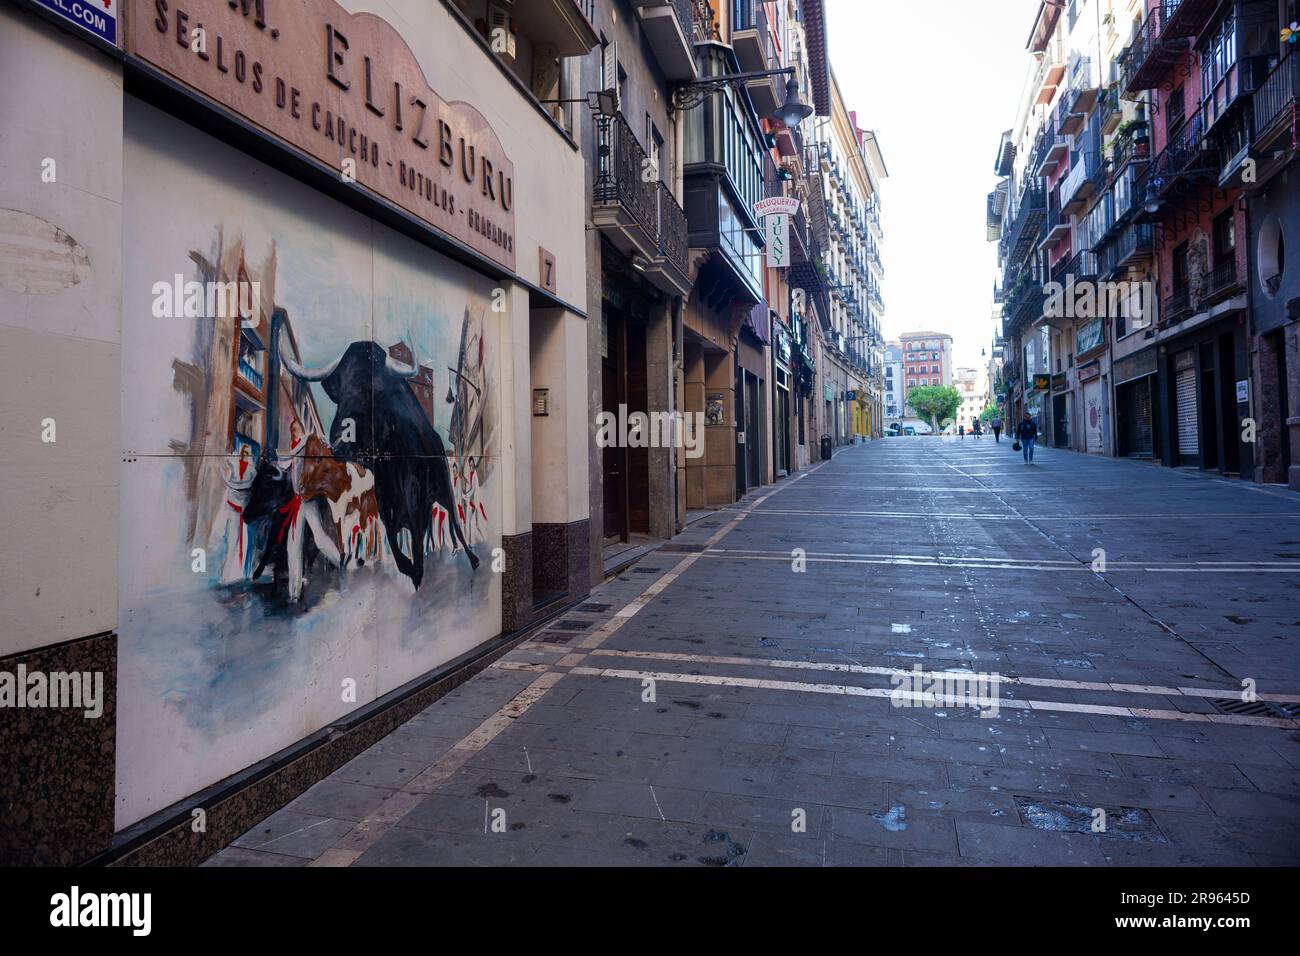 Pampelune, Espagne - juillet 31 : rue de Pampelune avec une peinture représentant un taureau pendant le festival de San Fermin Banque D'Images